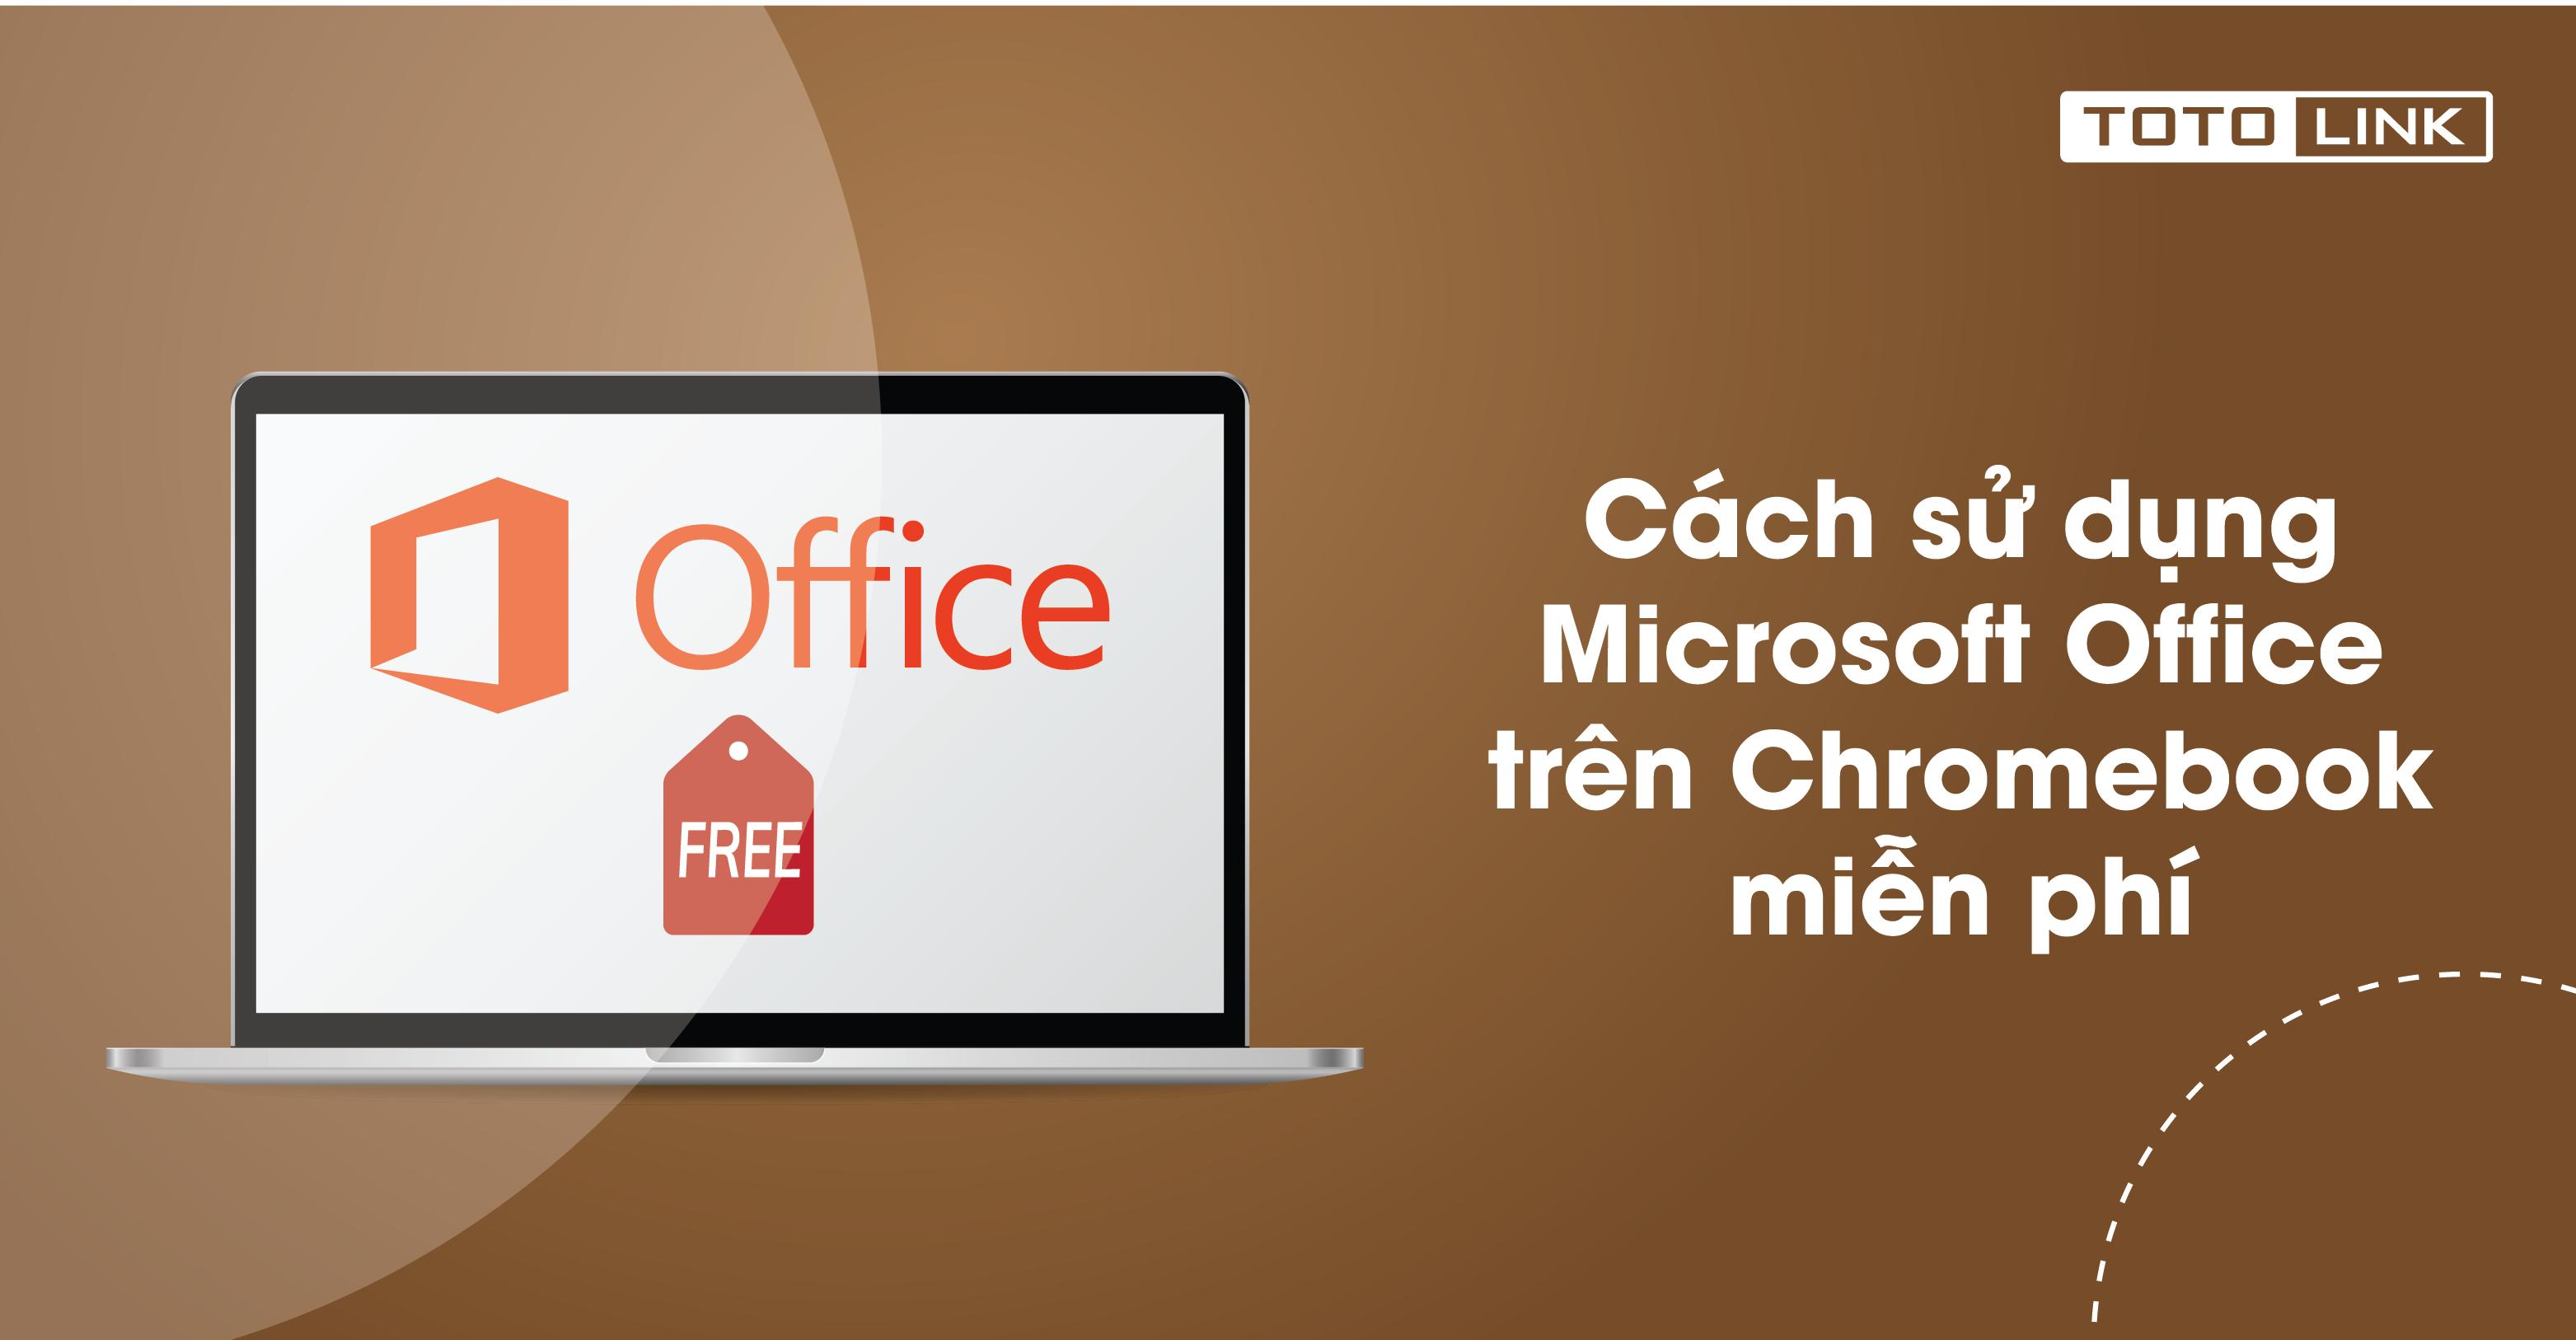 Cách sử dụng Microsoft Office trên Chromebook miễn phí bạn không nên bỏ qua